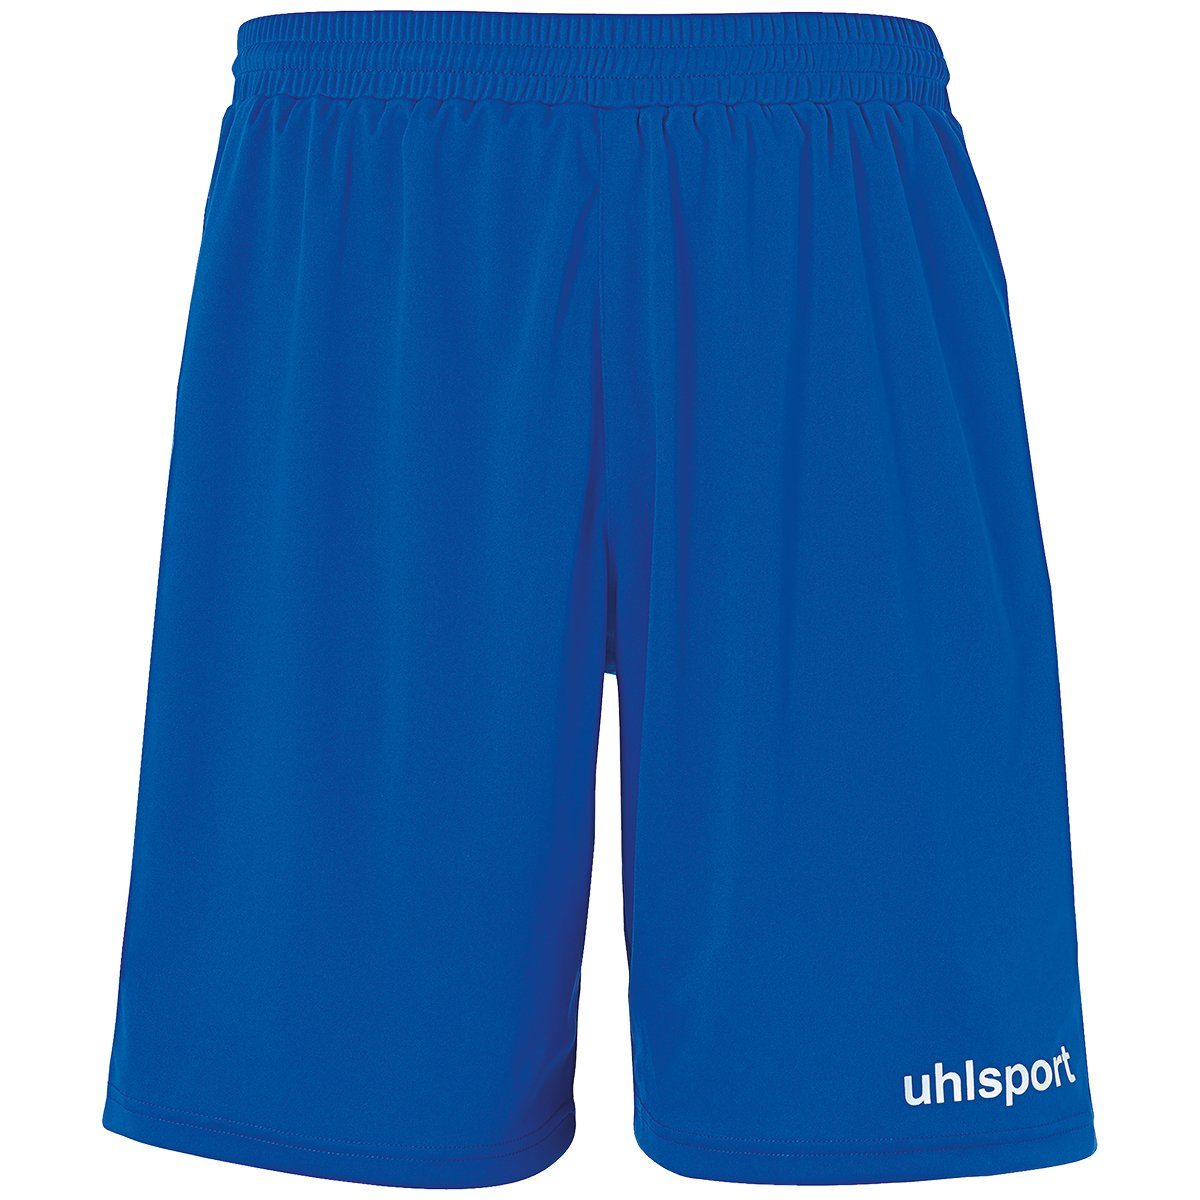 Shorts uhlsport SHORTS Shorts azurblau/weiß uhlsport PERFORMANCE